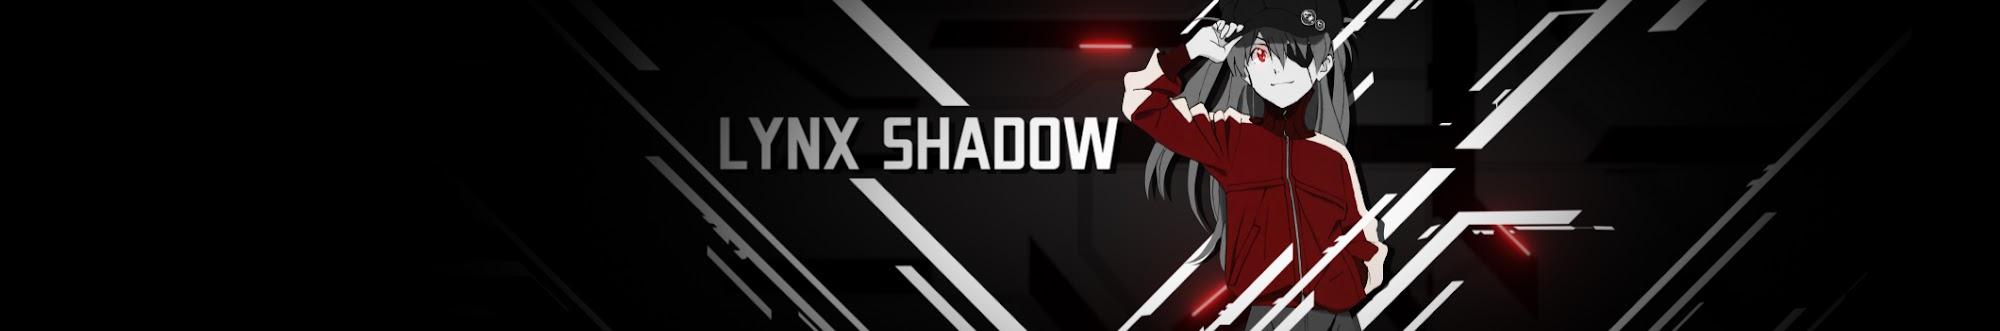 Lynx Shadow